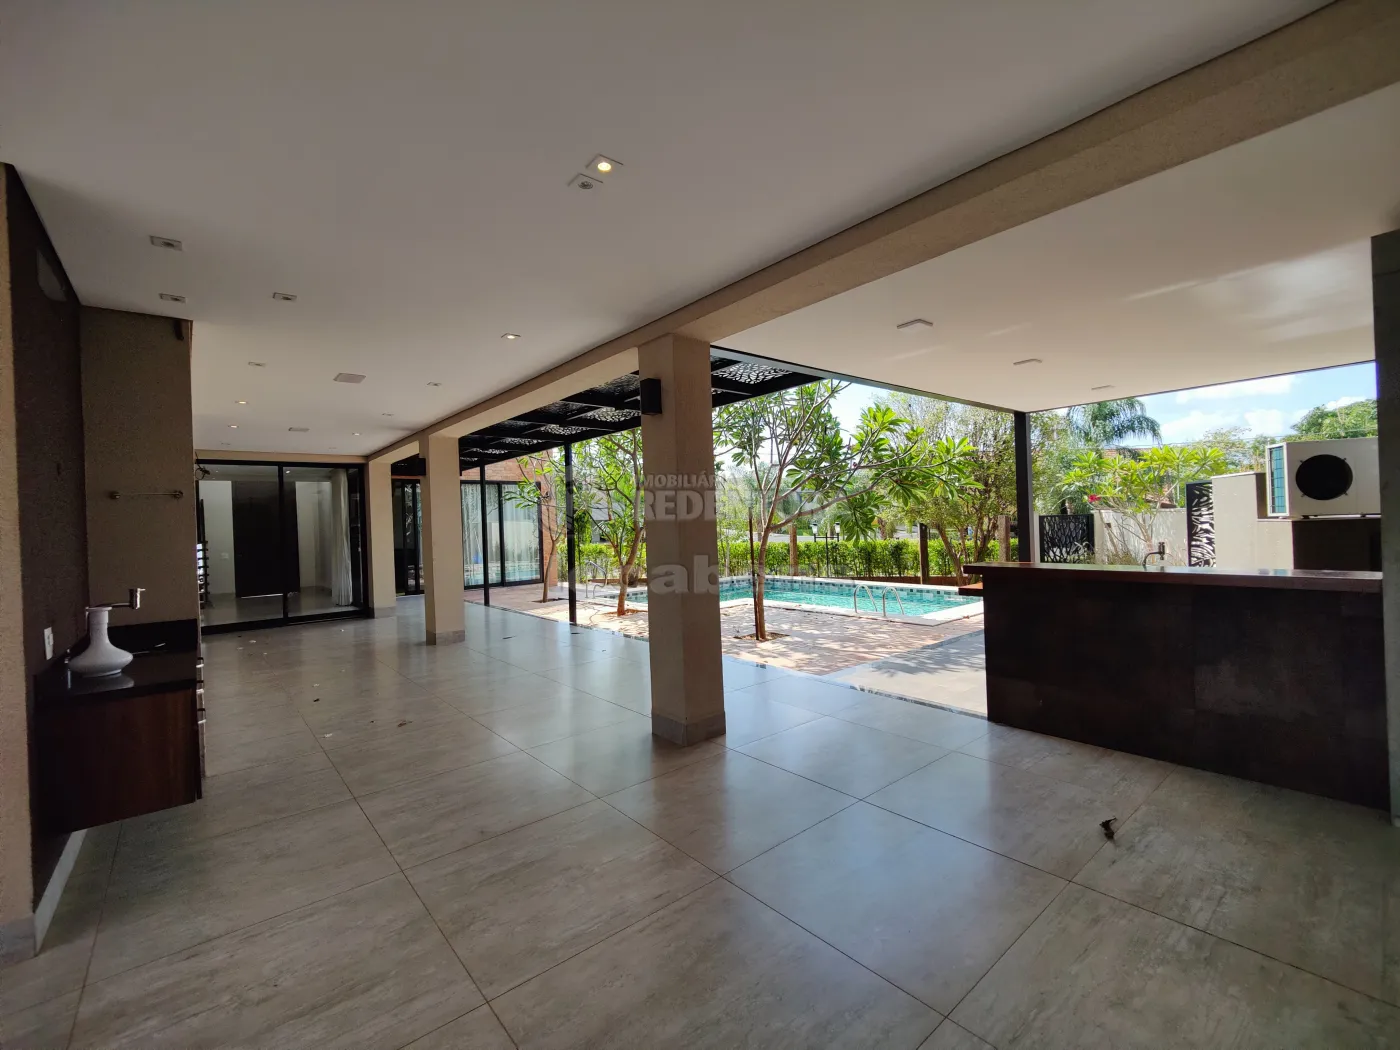 Comprar Casa / Condomínio em Mirassol apenas R$ 2.850.000,00 - Foto 14